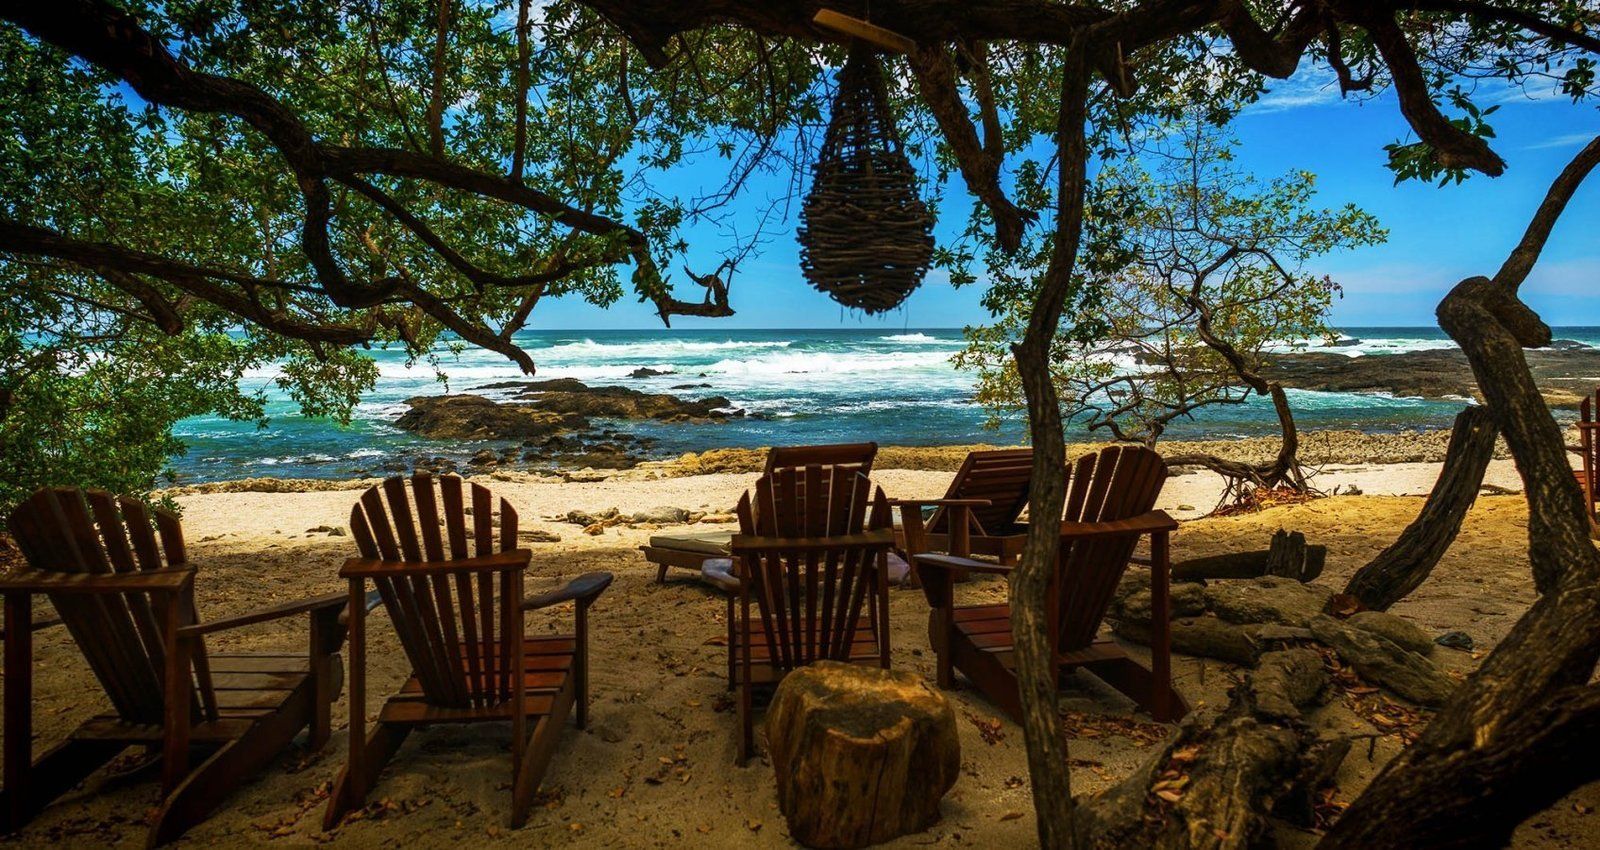 Conseils pour voyager au Costa Rica avec un petit budget
